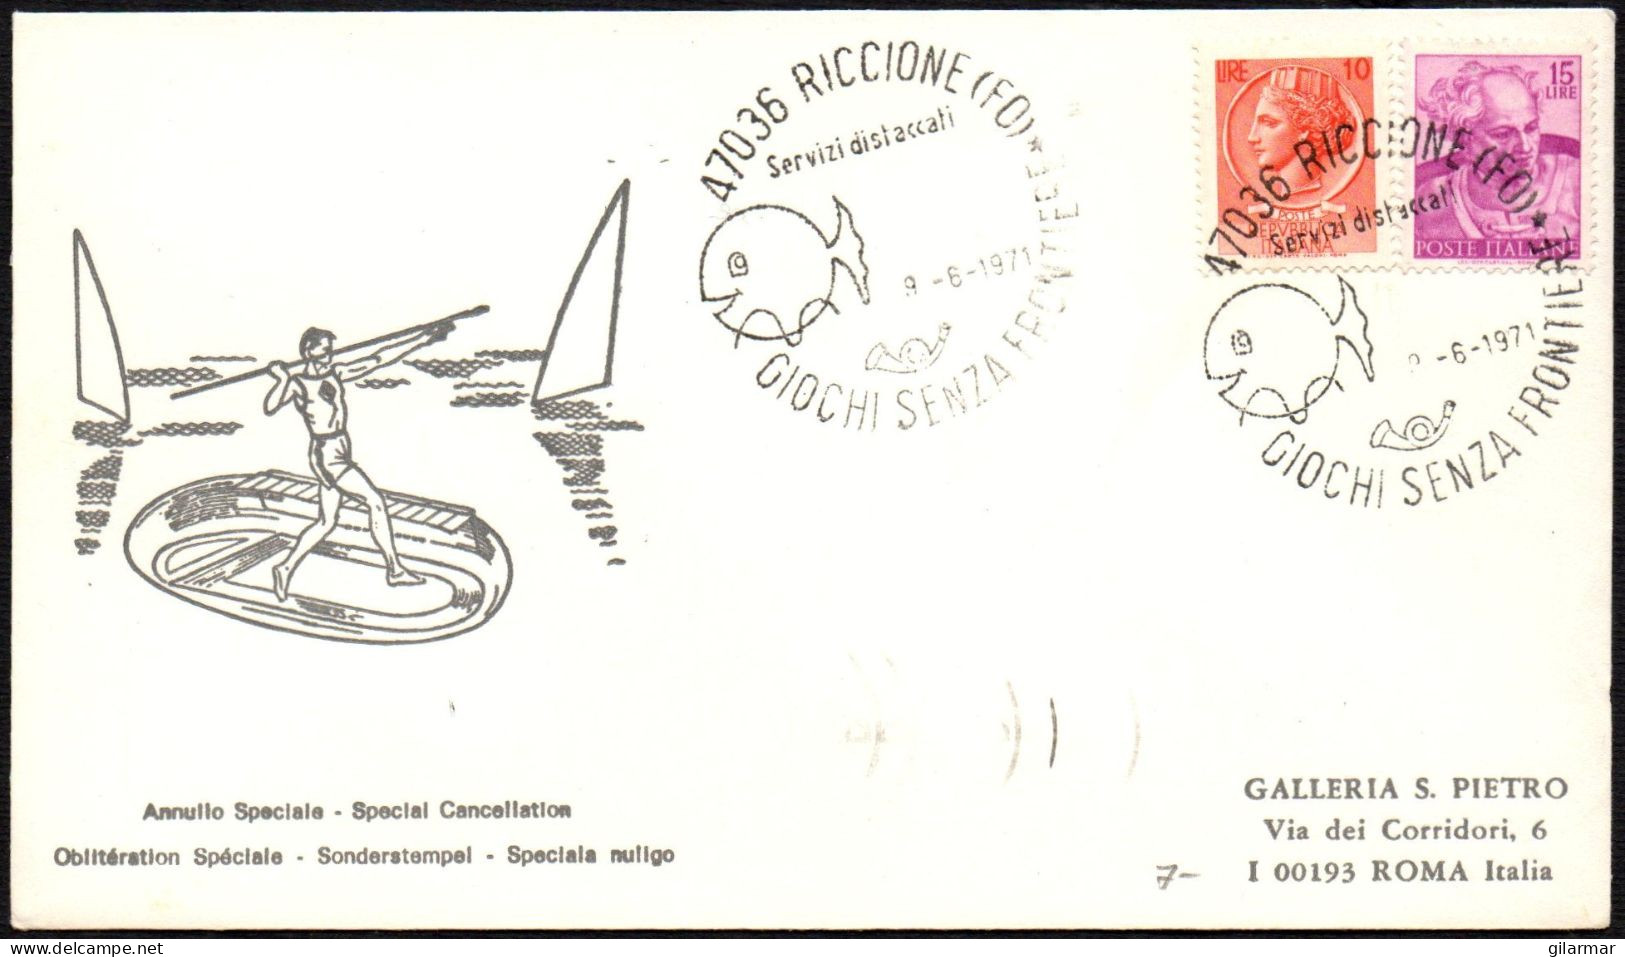 ITALIA RICCIONE (FO) 1971 - GIOCHI SENZA FRONTIERE - BUSTA VIAGGIATA - BOLLO ARRIVO ROMA RISPARMIO POSTALE - M - Zonder Classificatie